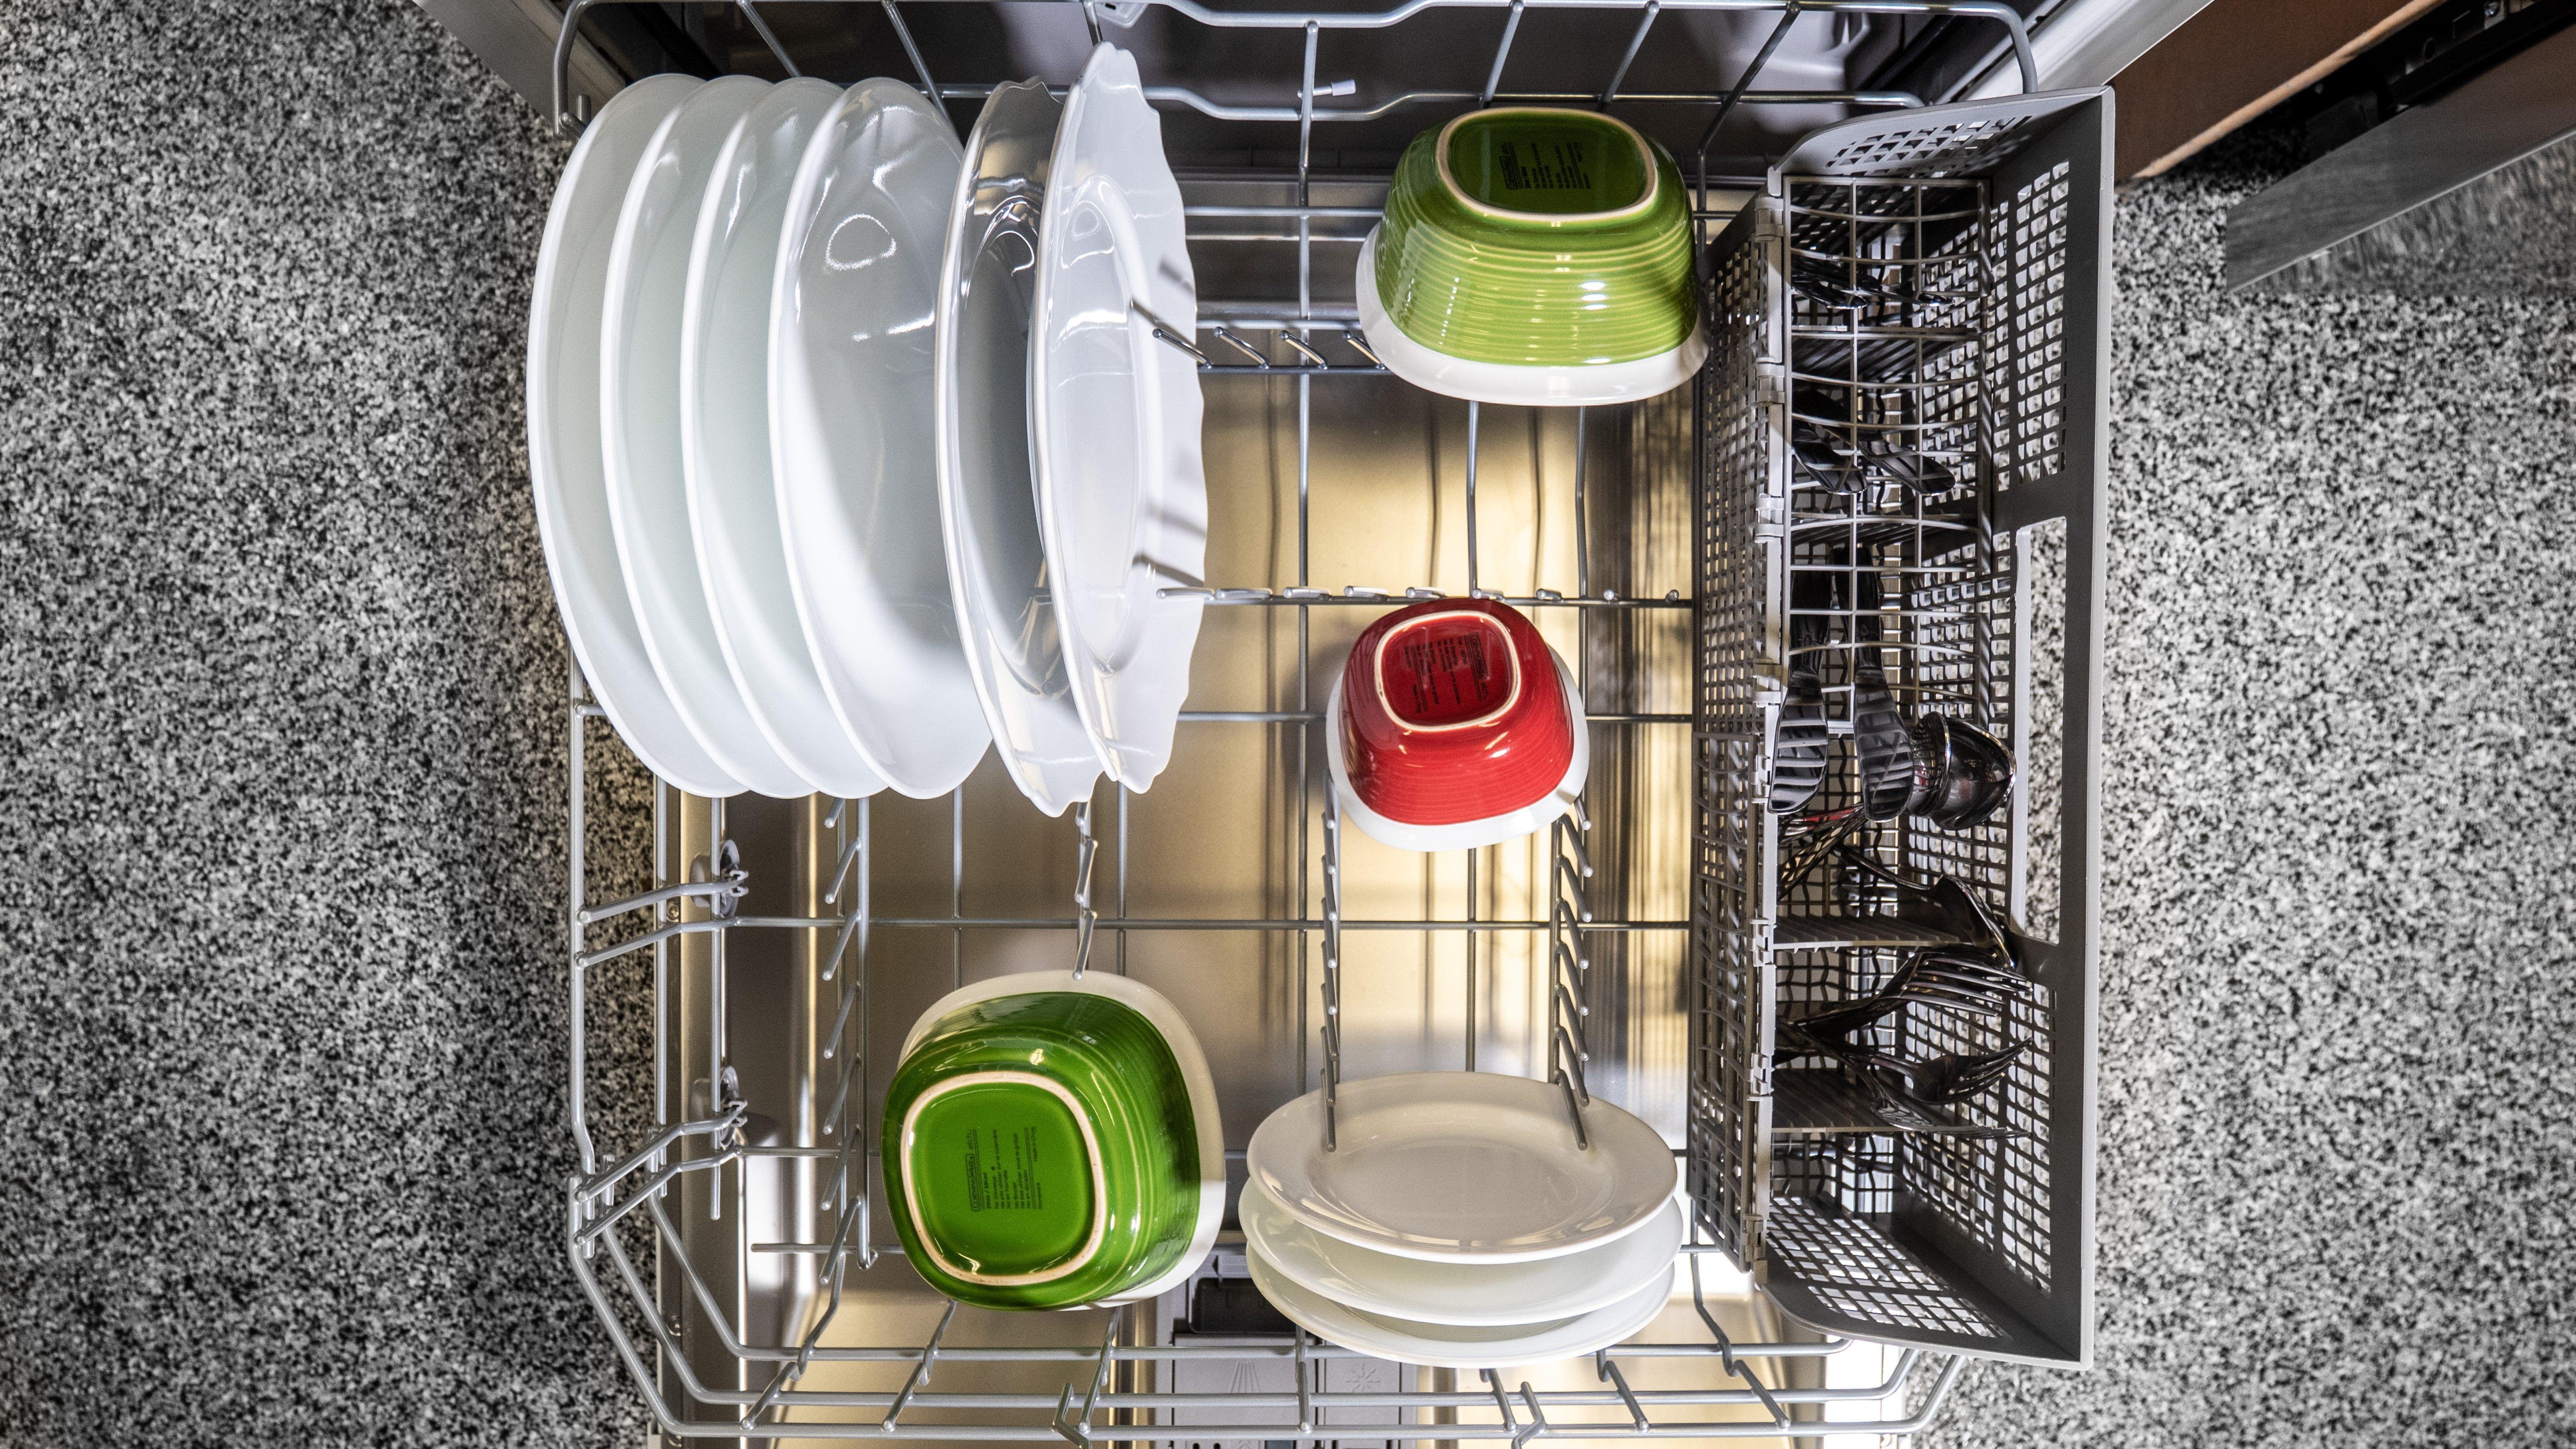 abt dishwasher sale